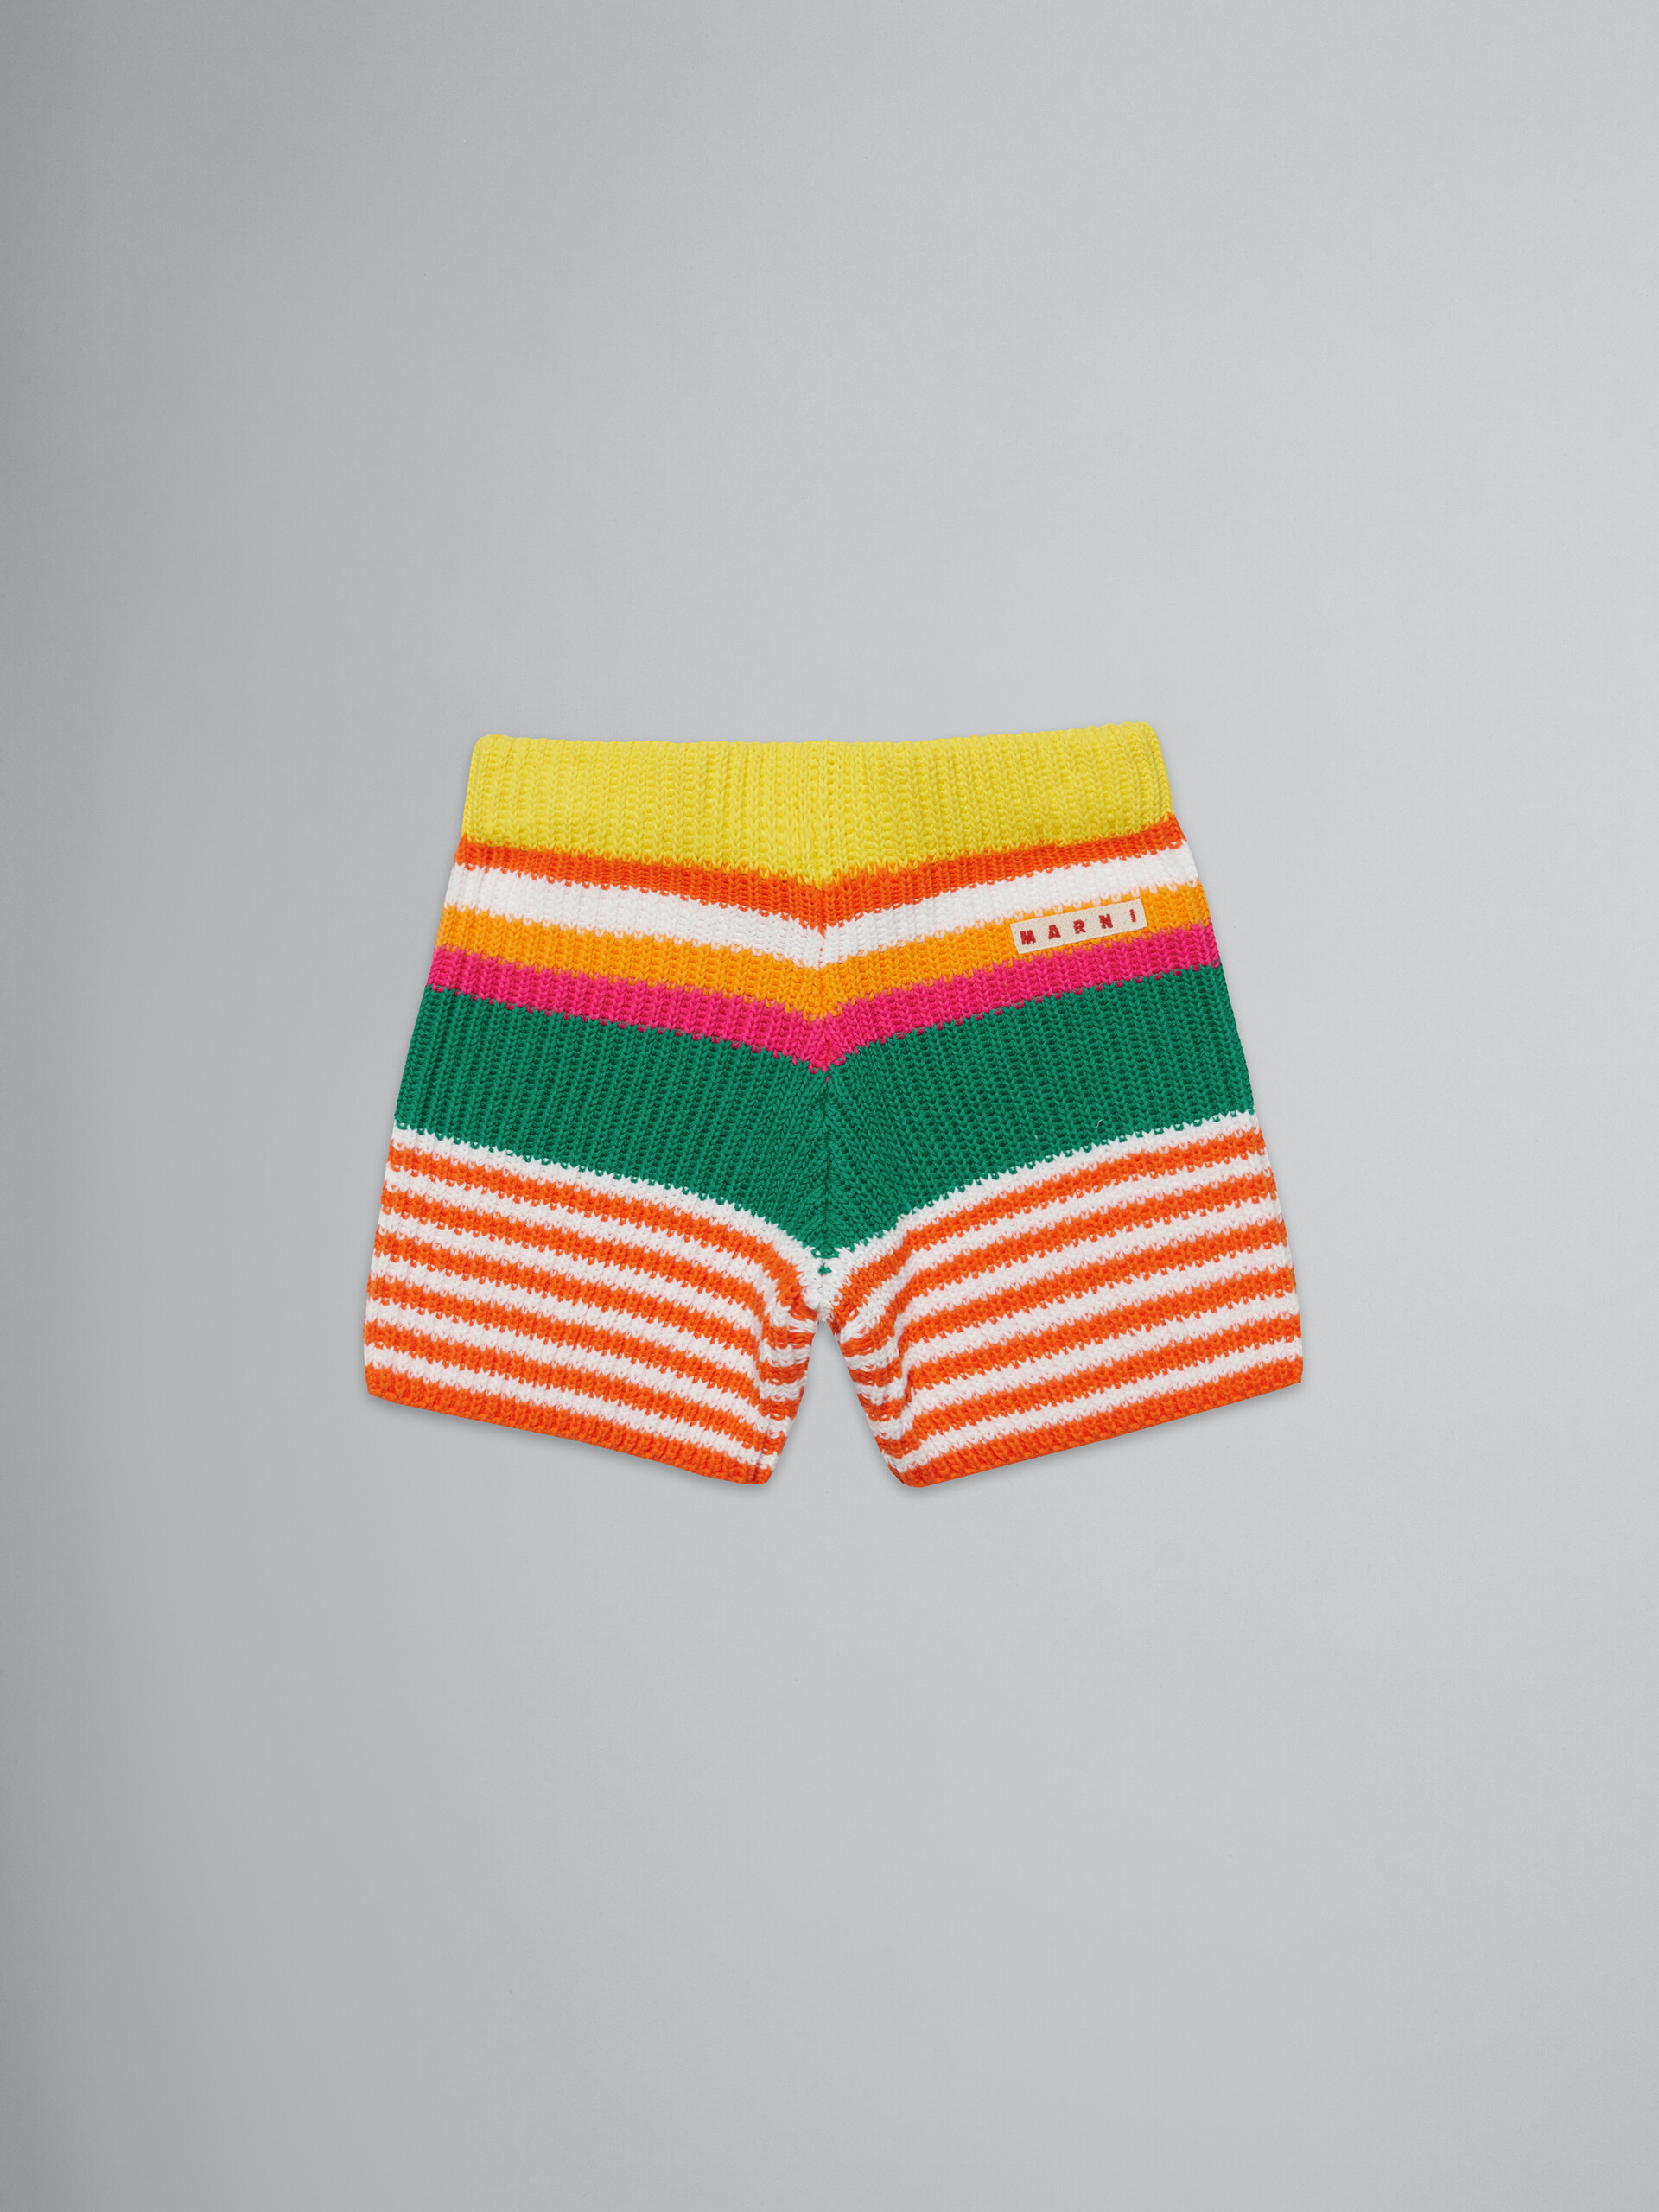 Shorts in maglia a righe multicolor - Pantaloni - Image 1